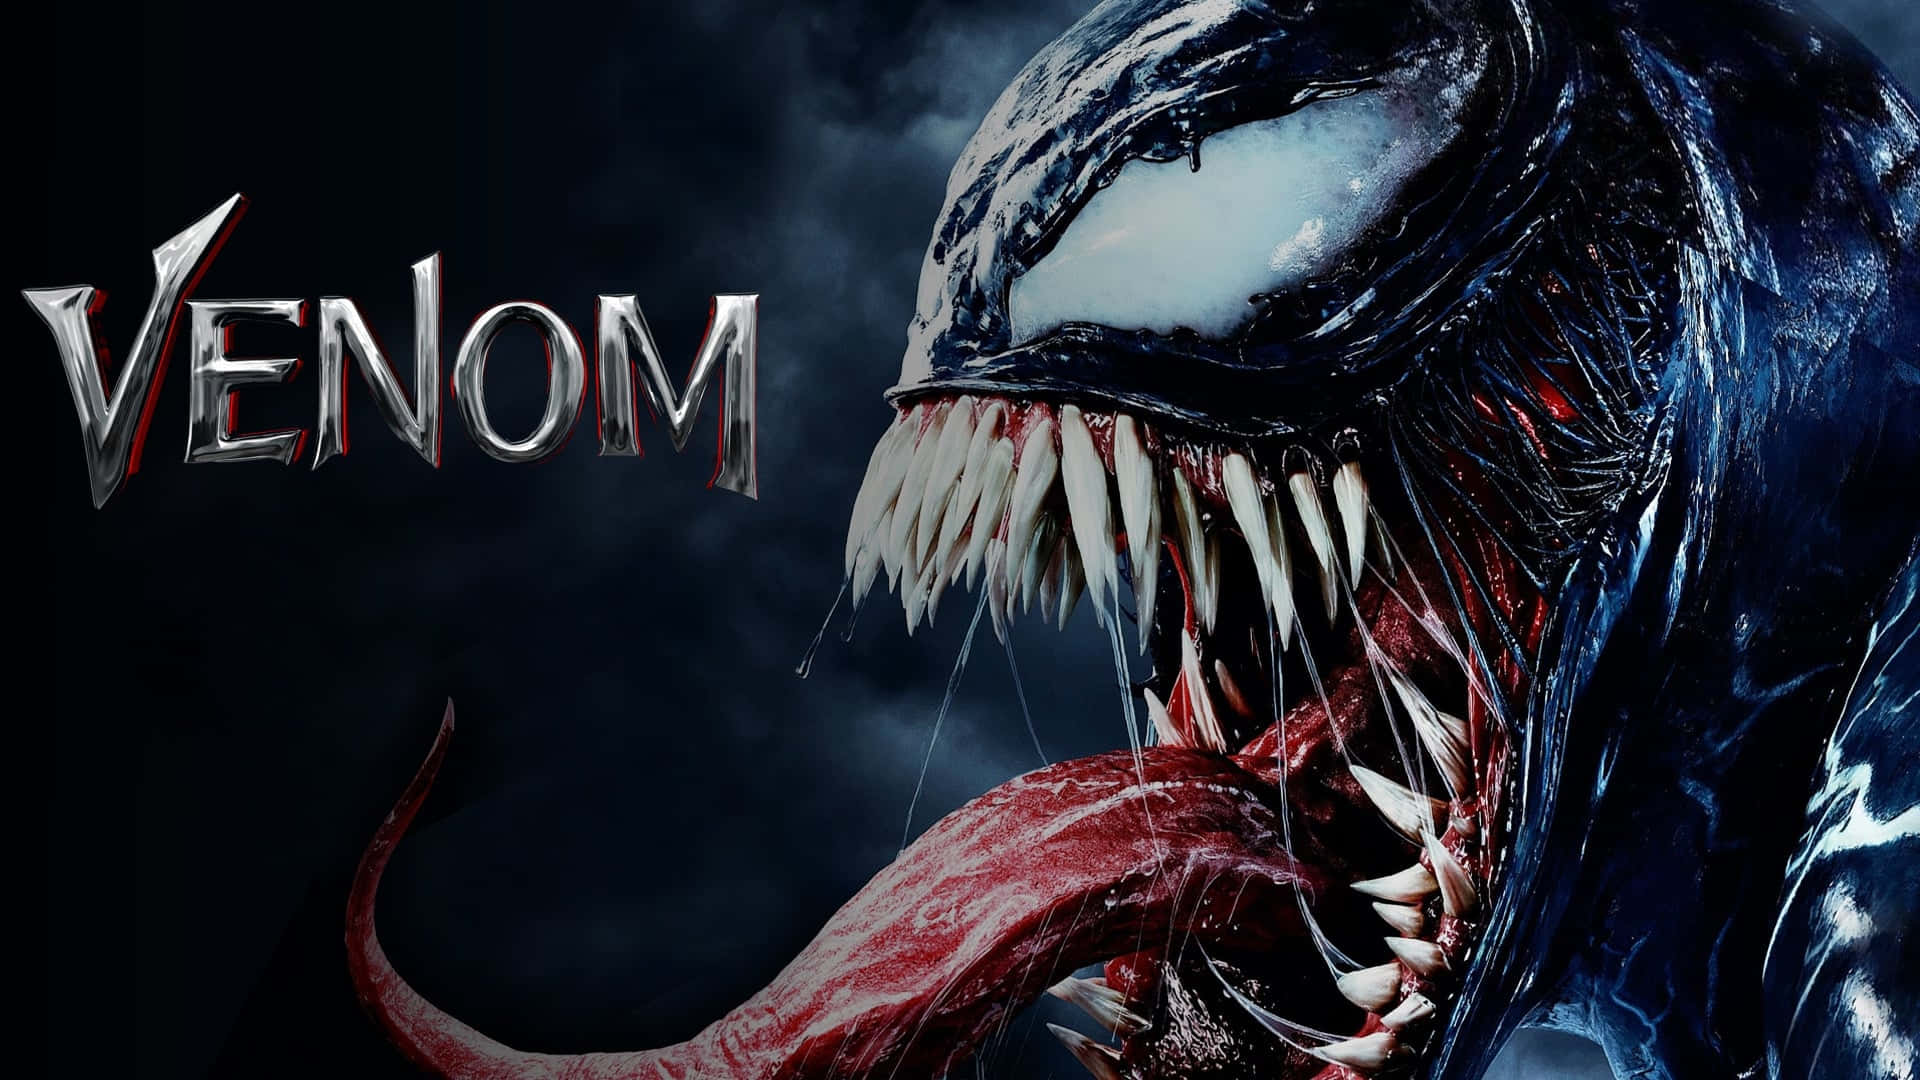 300+] Venom Pictures